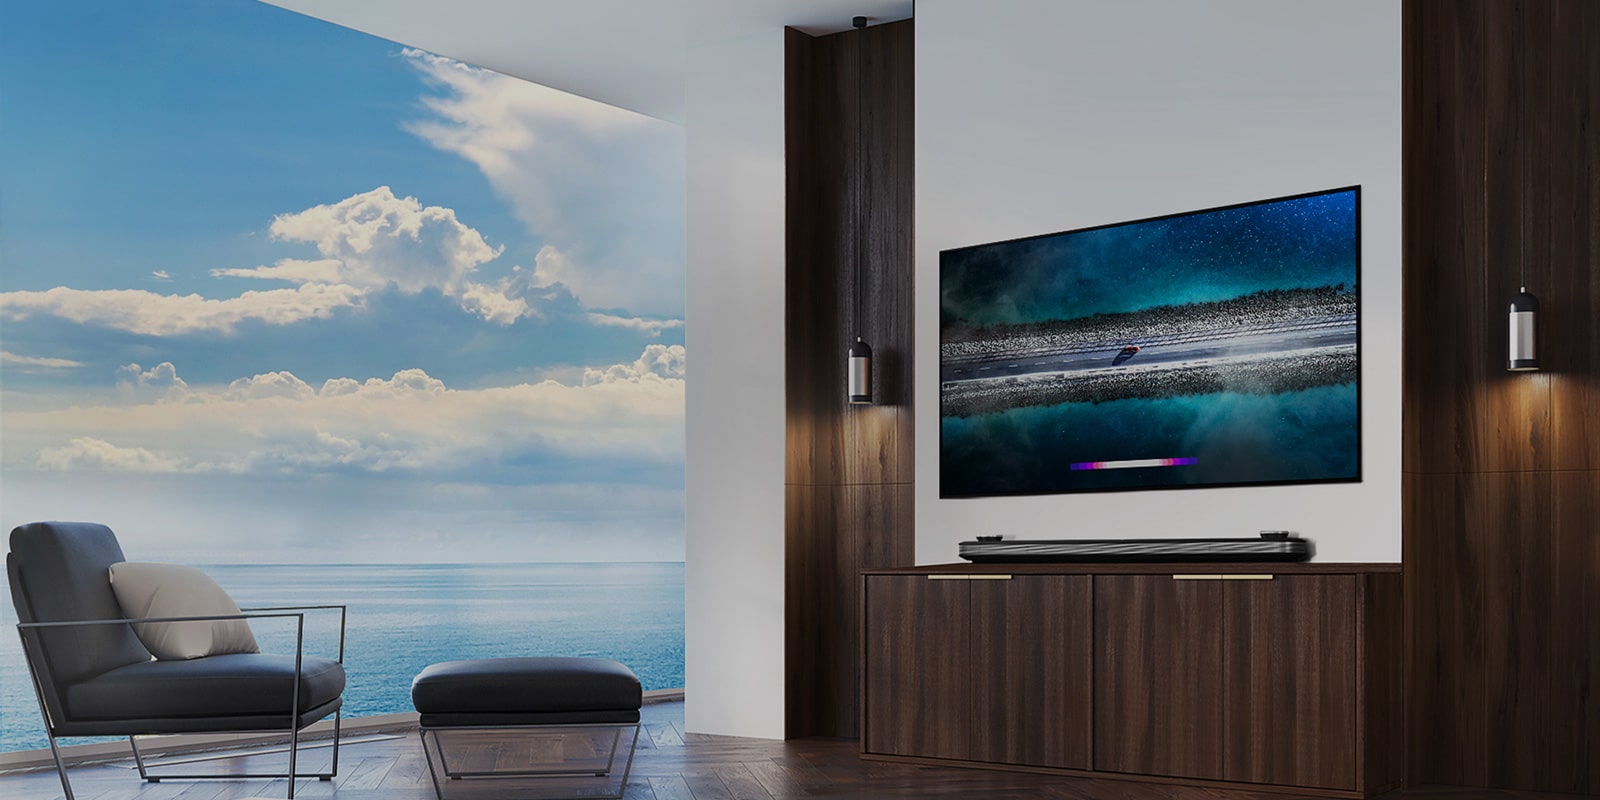 LG SIGNATURE OLED TV W9 روی دیوار آویزان شده است و یک تخت درست در مقابل تلویزیون با آسمان آبی بالای پنجره قرار گرفته است.			